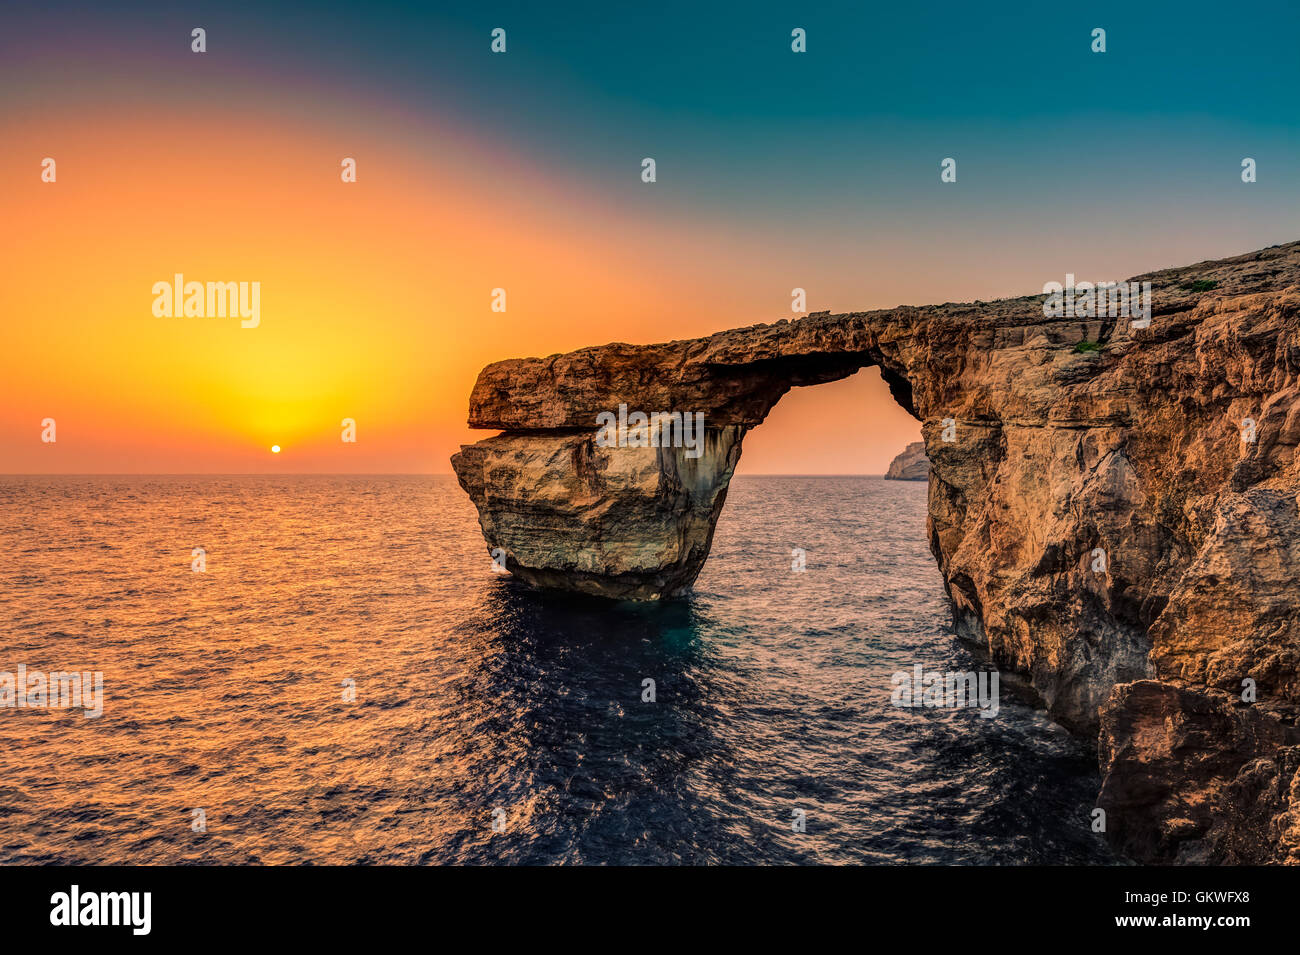 Azure Window, Malta Stock Photo